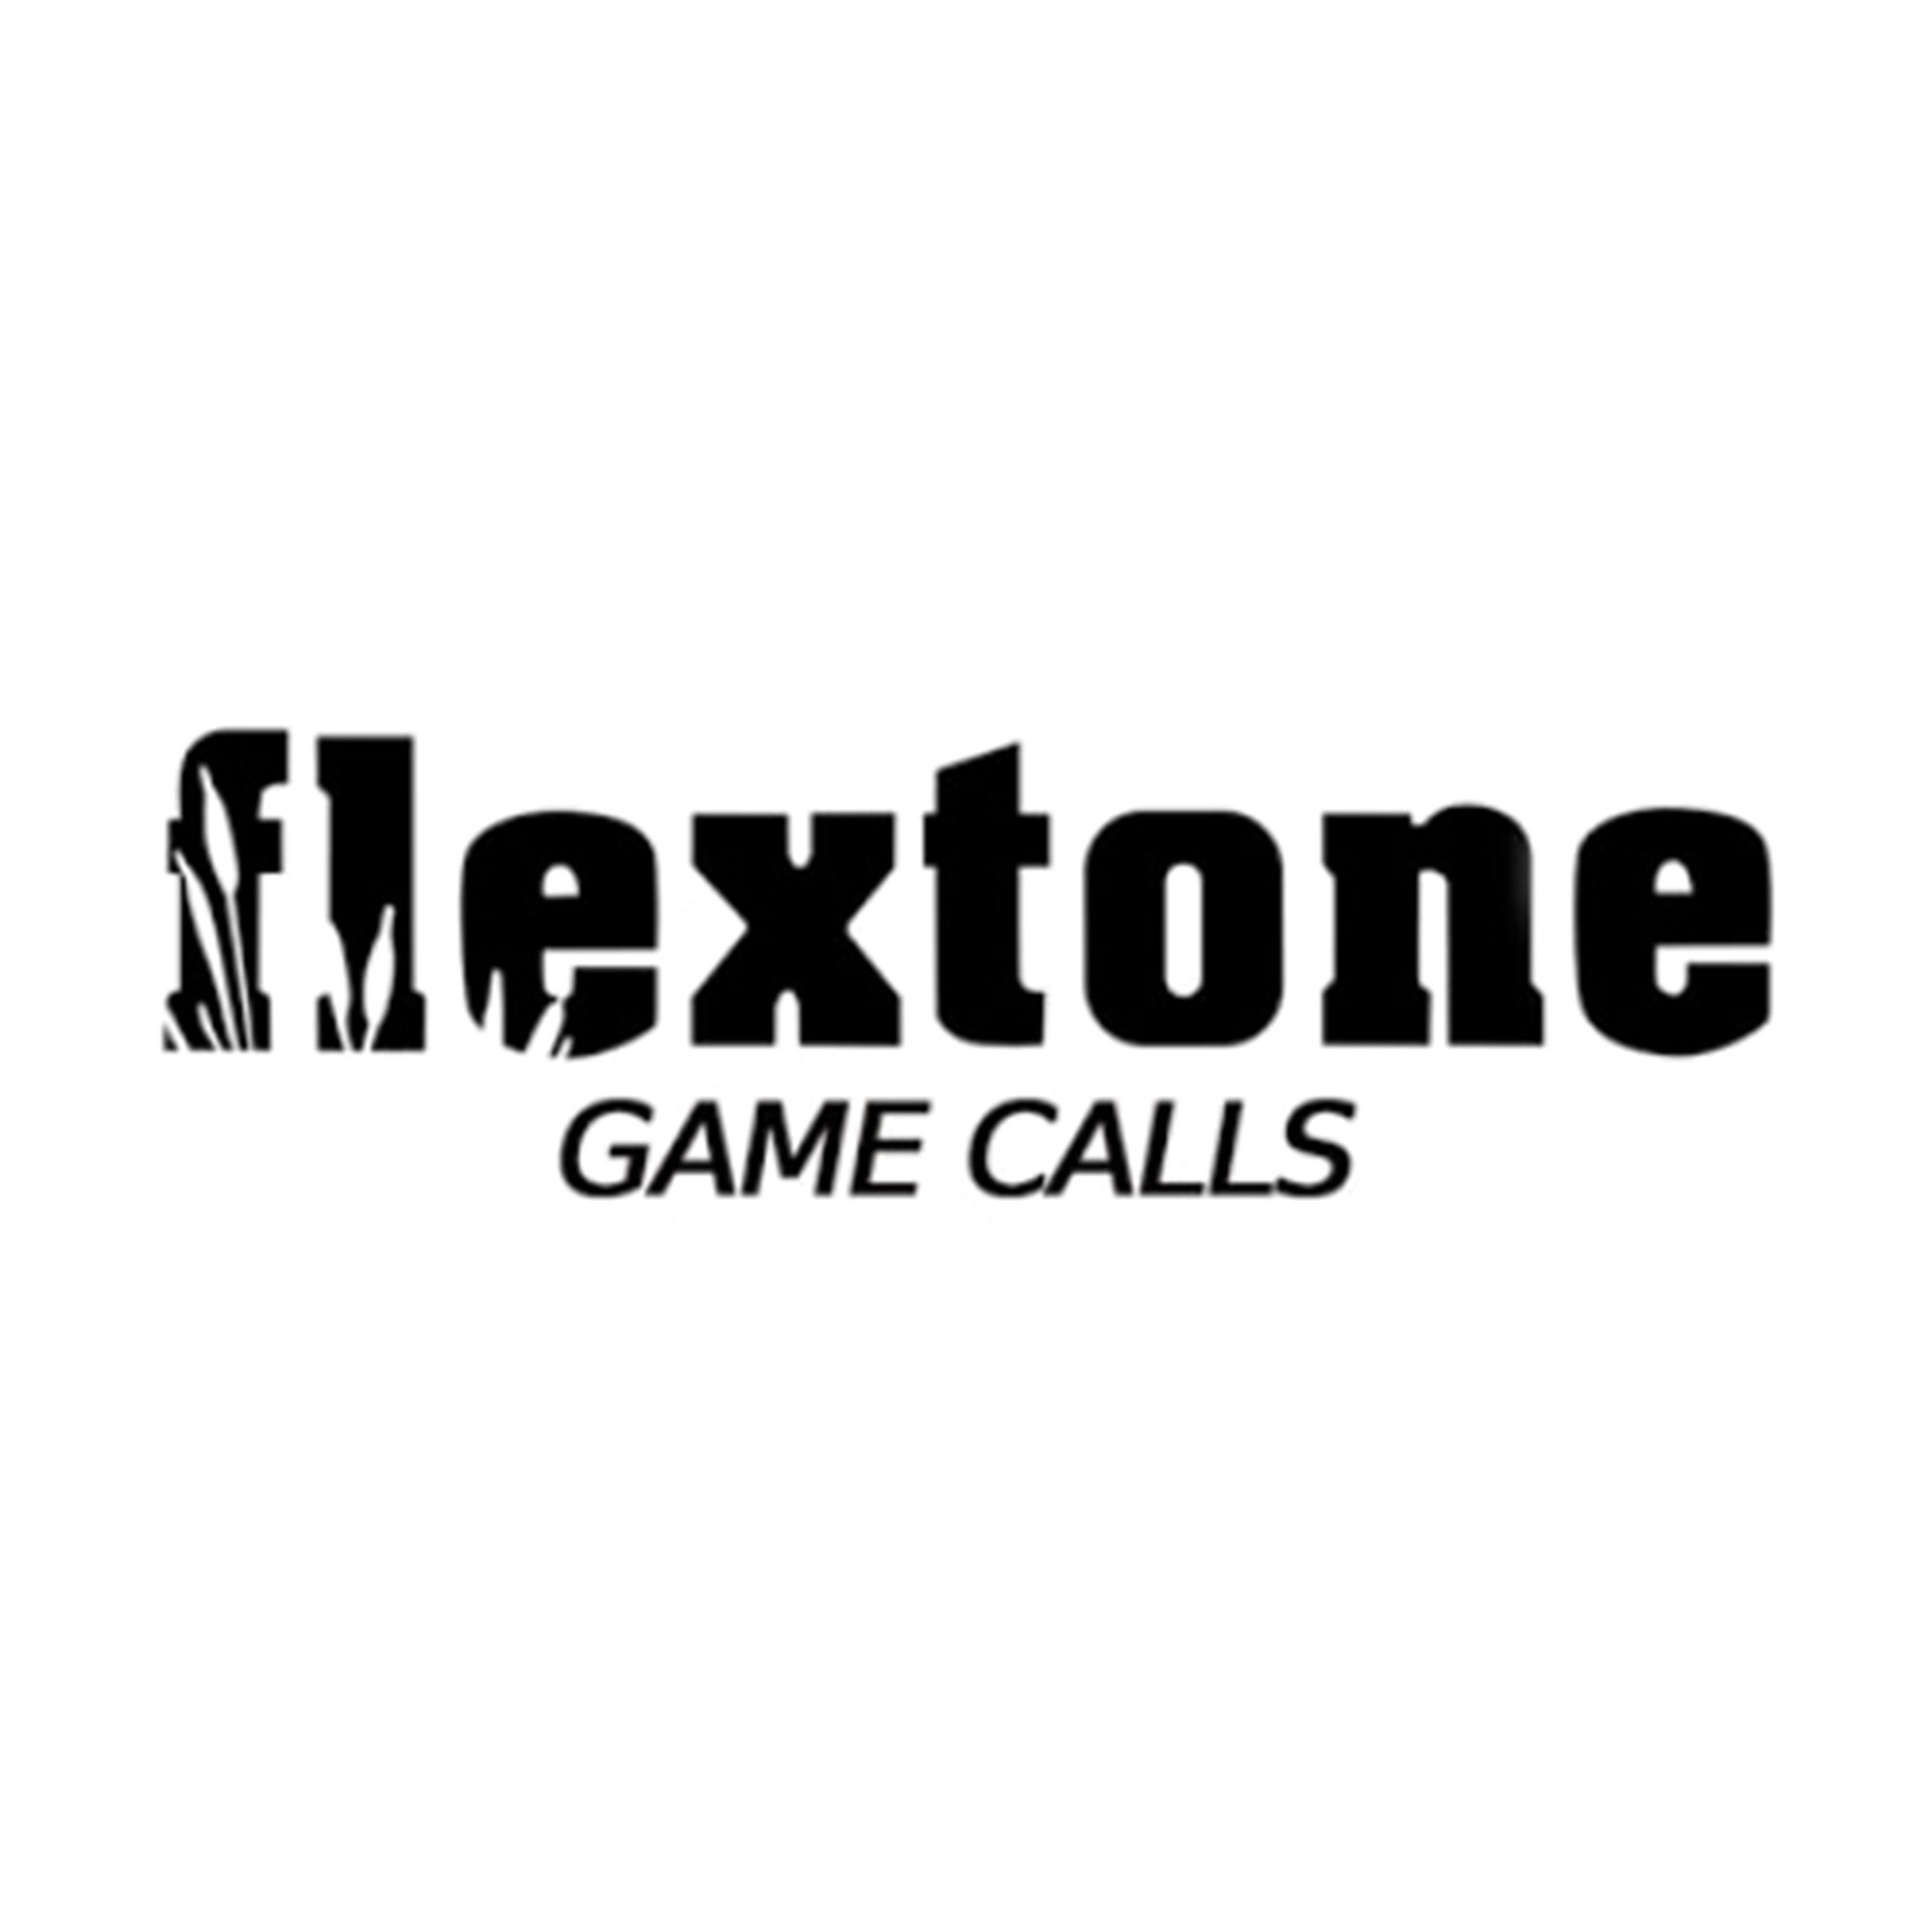 A_flextone